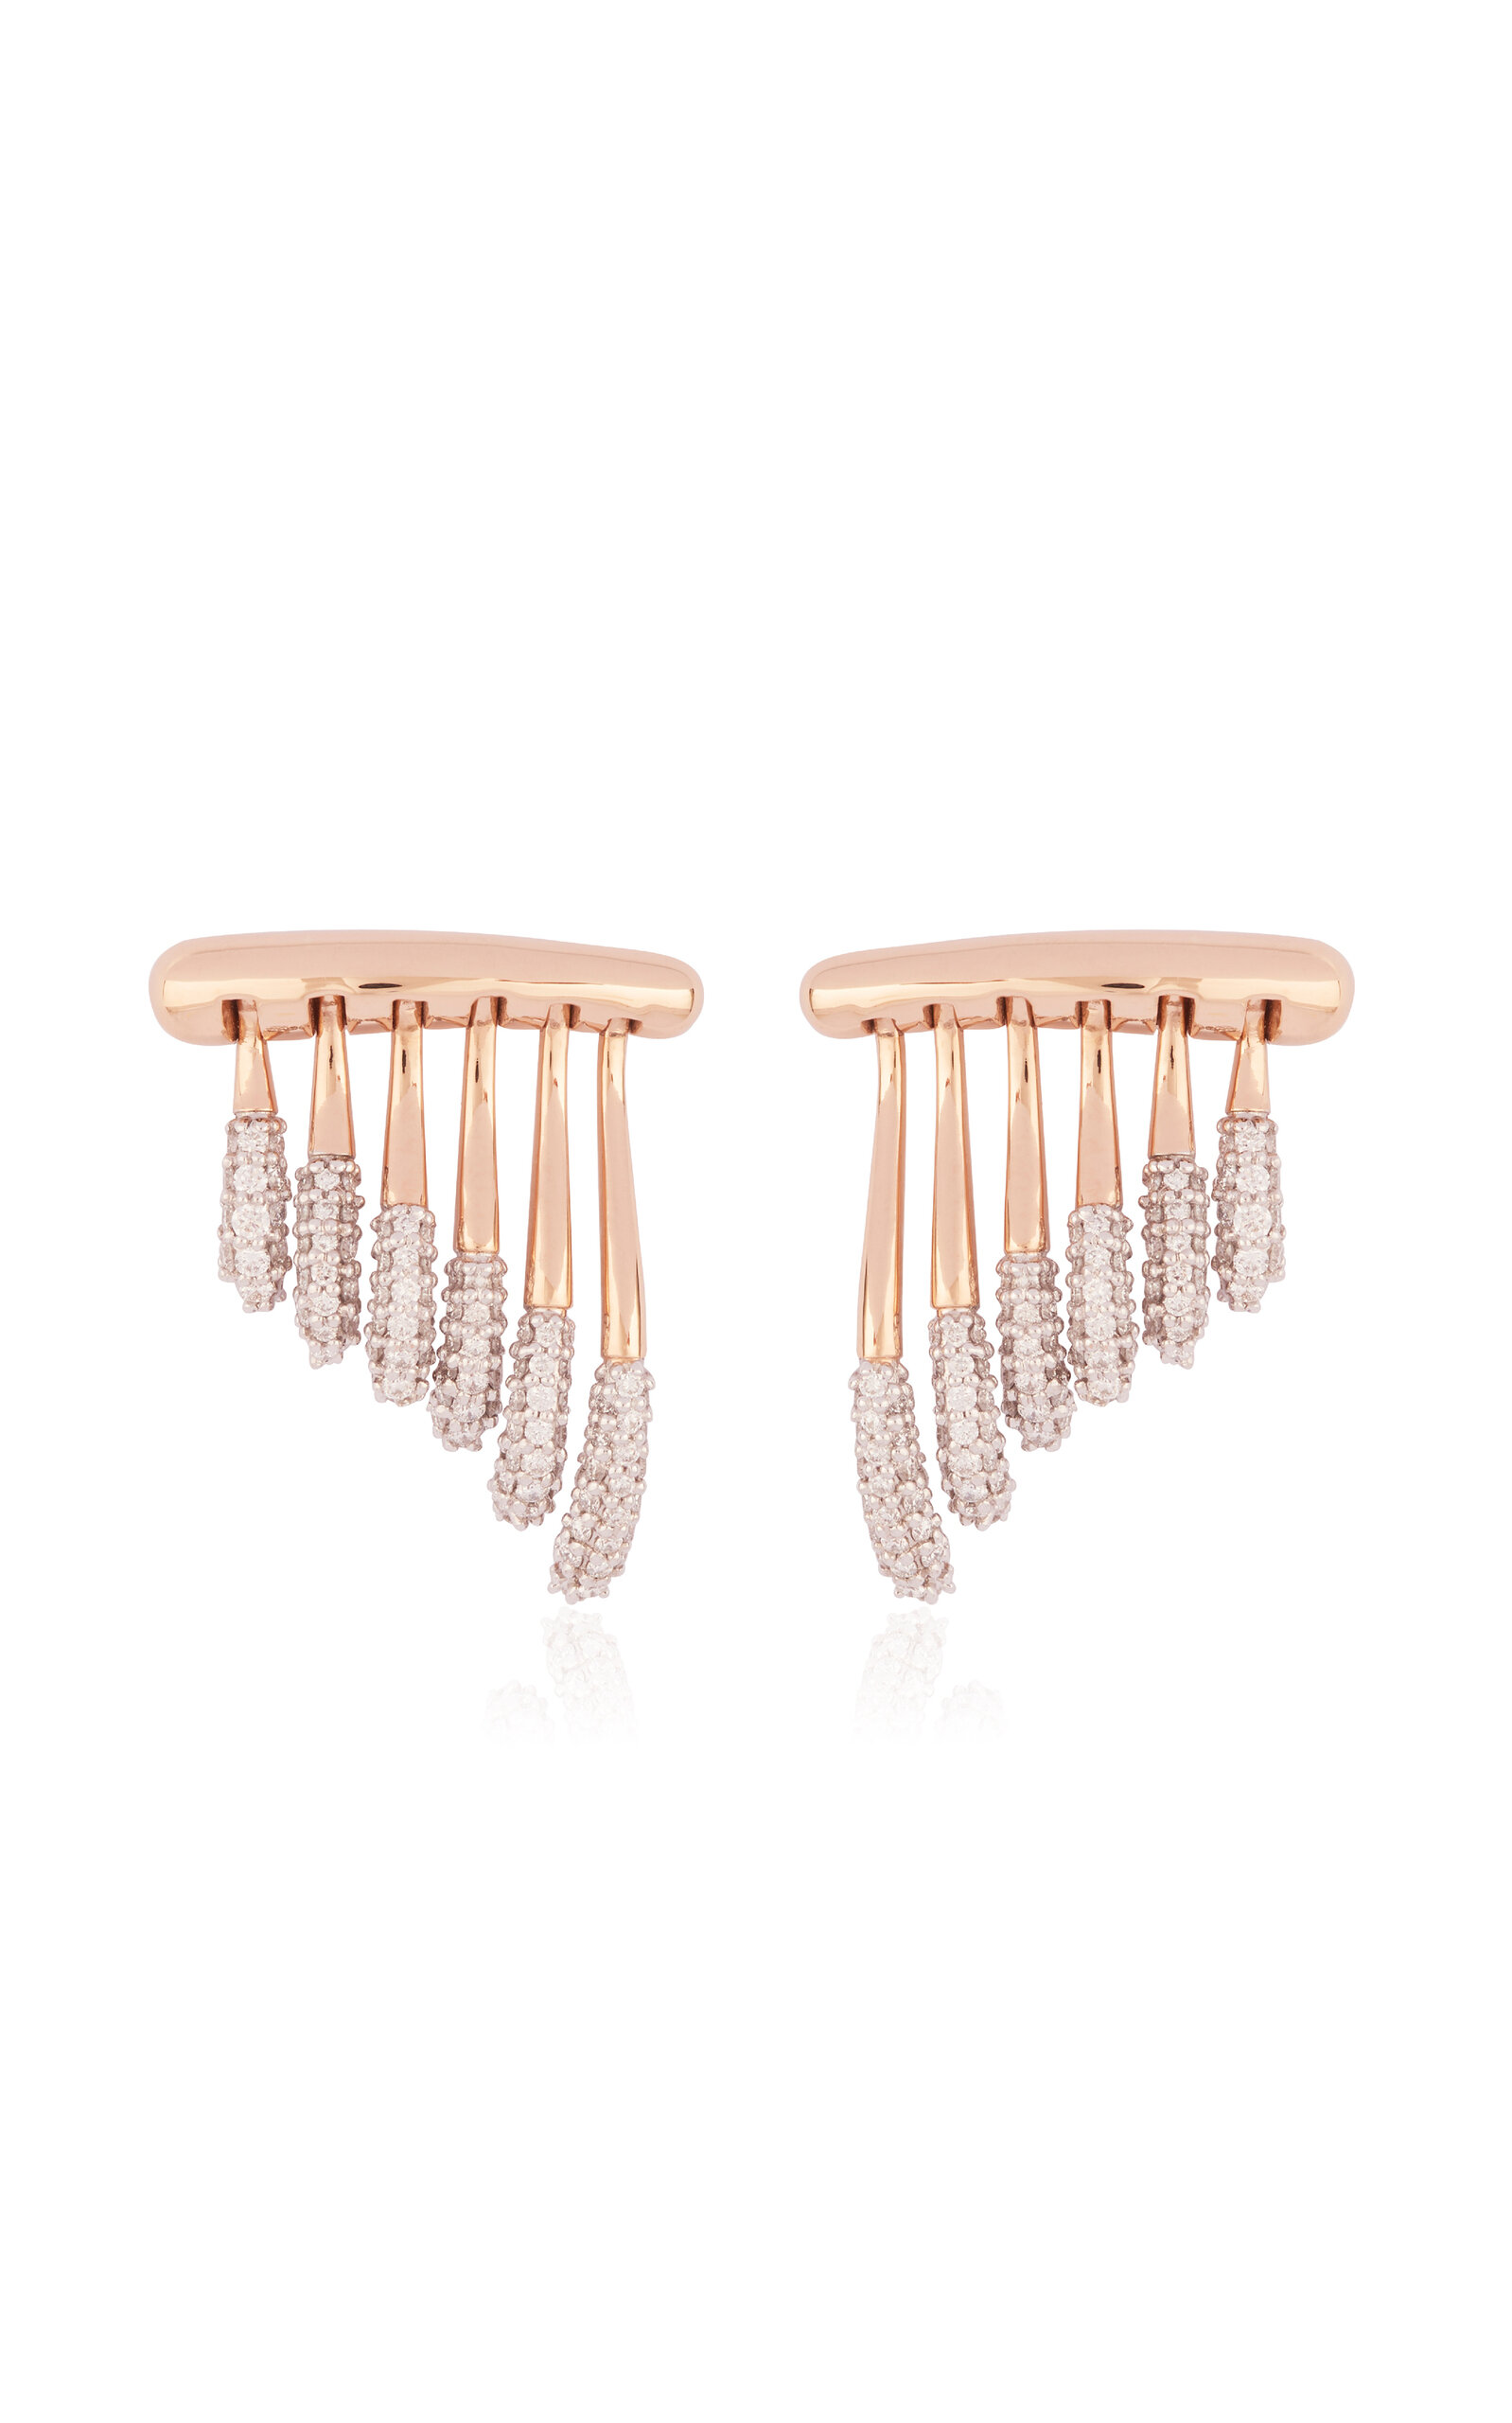 Queen Wave 18k Rose Gold Diamond Earrings